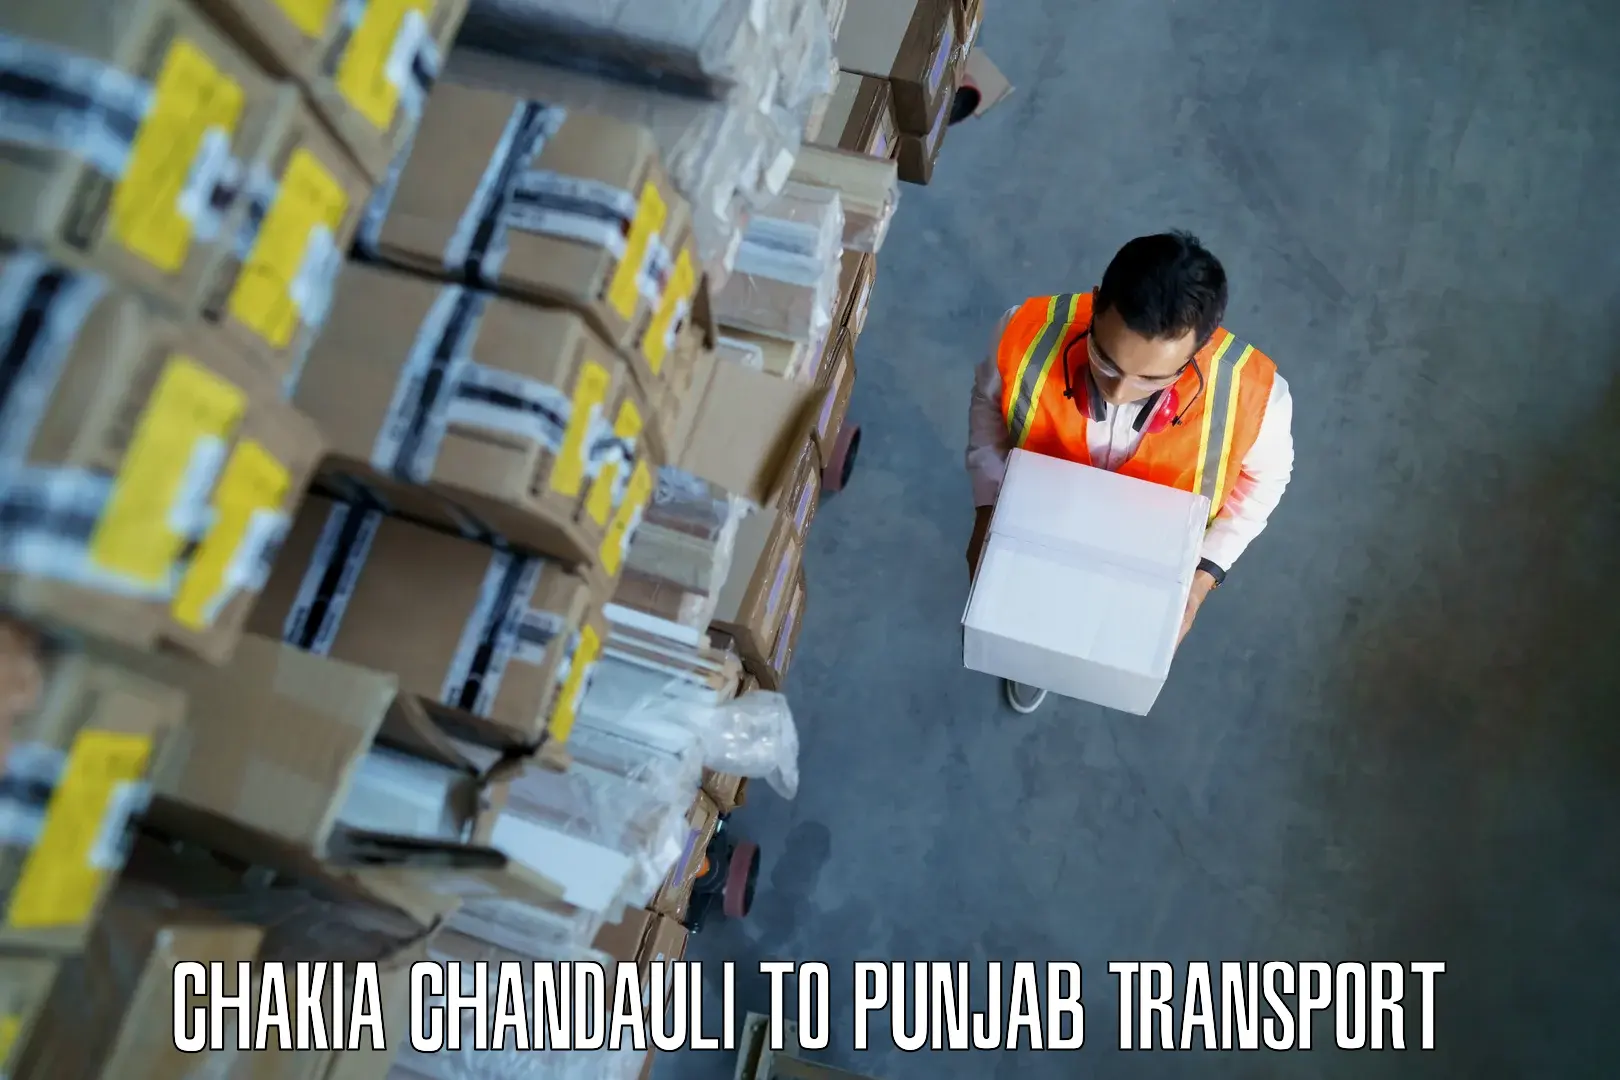 Inland transportation services Chakia Chandauli to Punjab